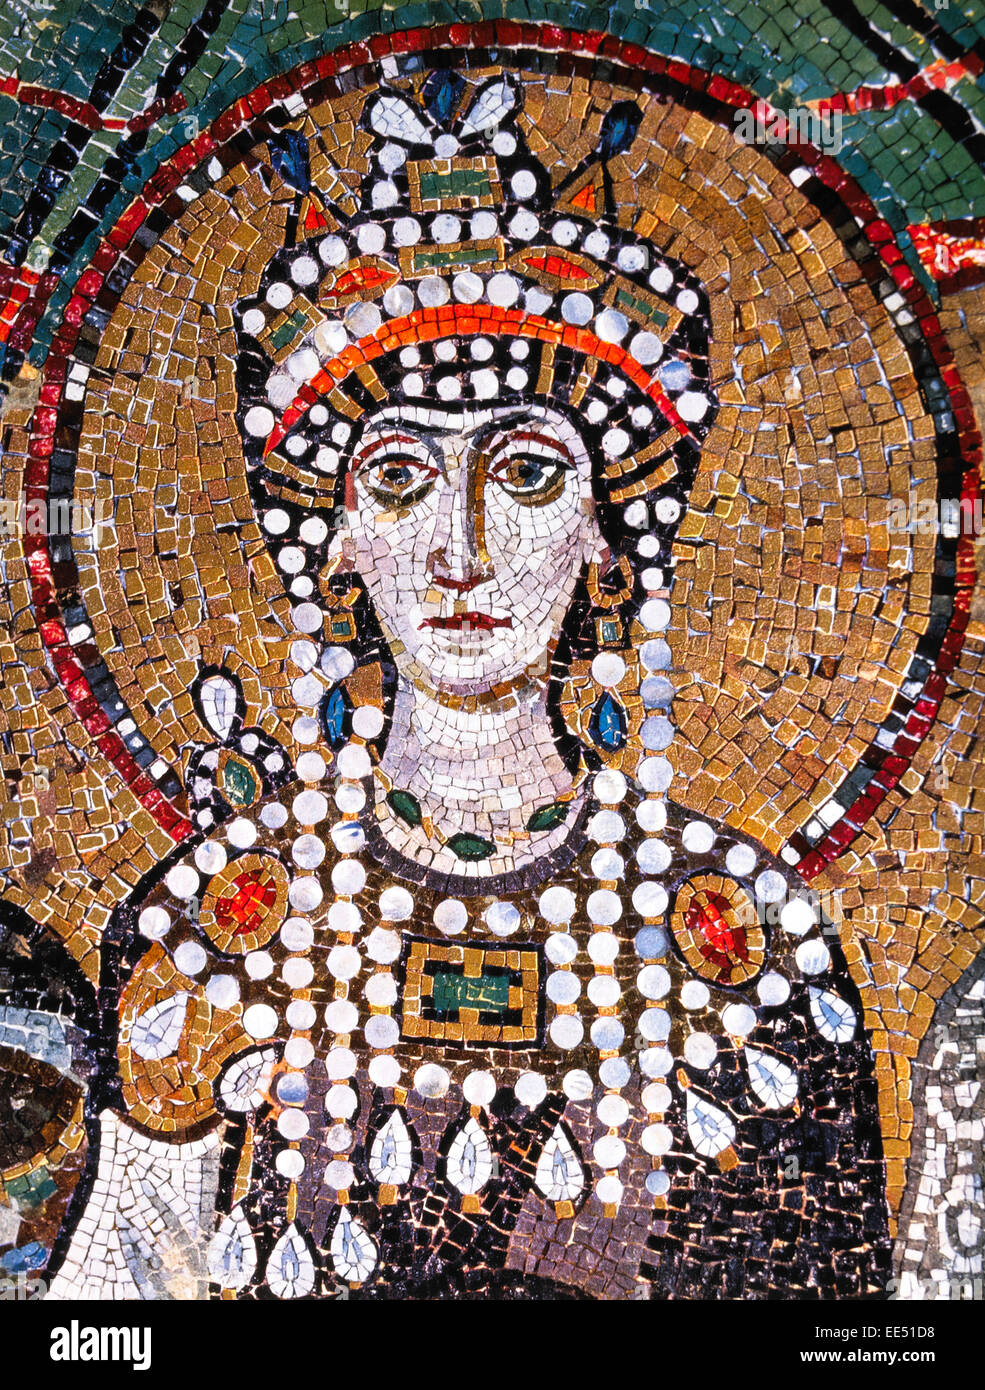 Theodora (500-548), imperatrice bizantina e moglie dell'Imperatore Giustiniano, dettaglio del mosaico bizantino, Basilica di San Vitale, Ravenna, Italia Foto Stock